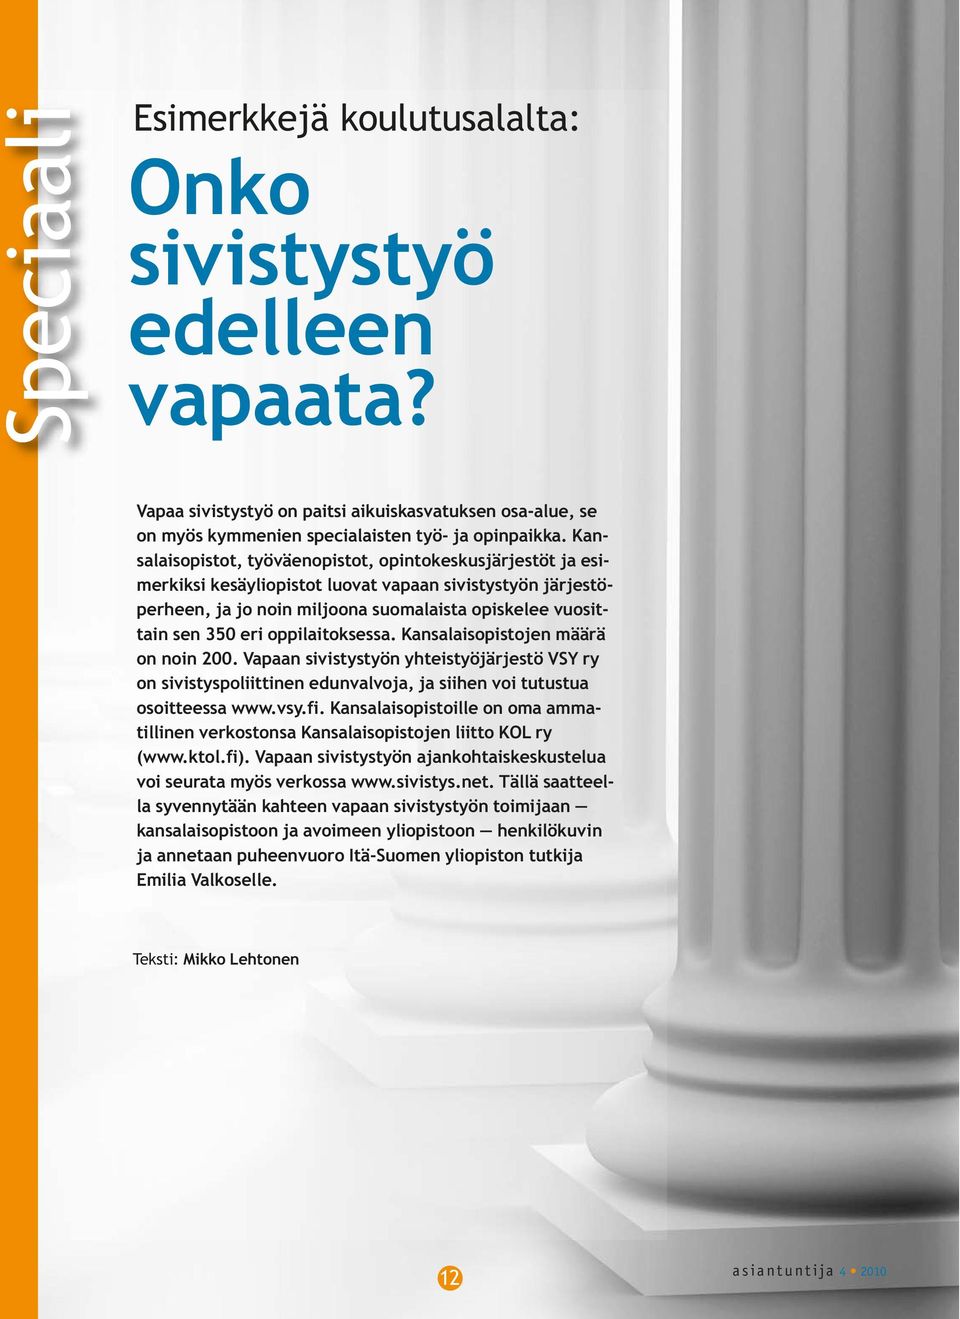 oppilaitoksessa. Kansalaisopistojen määrä on noin 200. Vapaan sivistystyön yhteistyöjärjestö VSY ry on sivistyspoliittinen edunvalvoja, ja siihen voi tutustua osoitteessa www.vsy.fi.